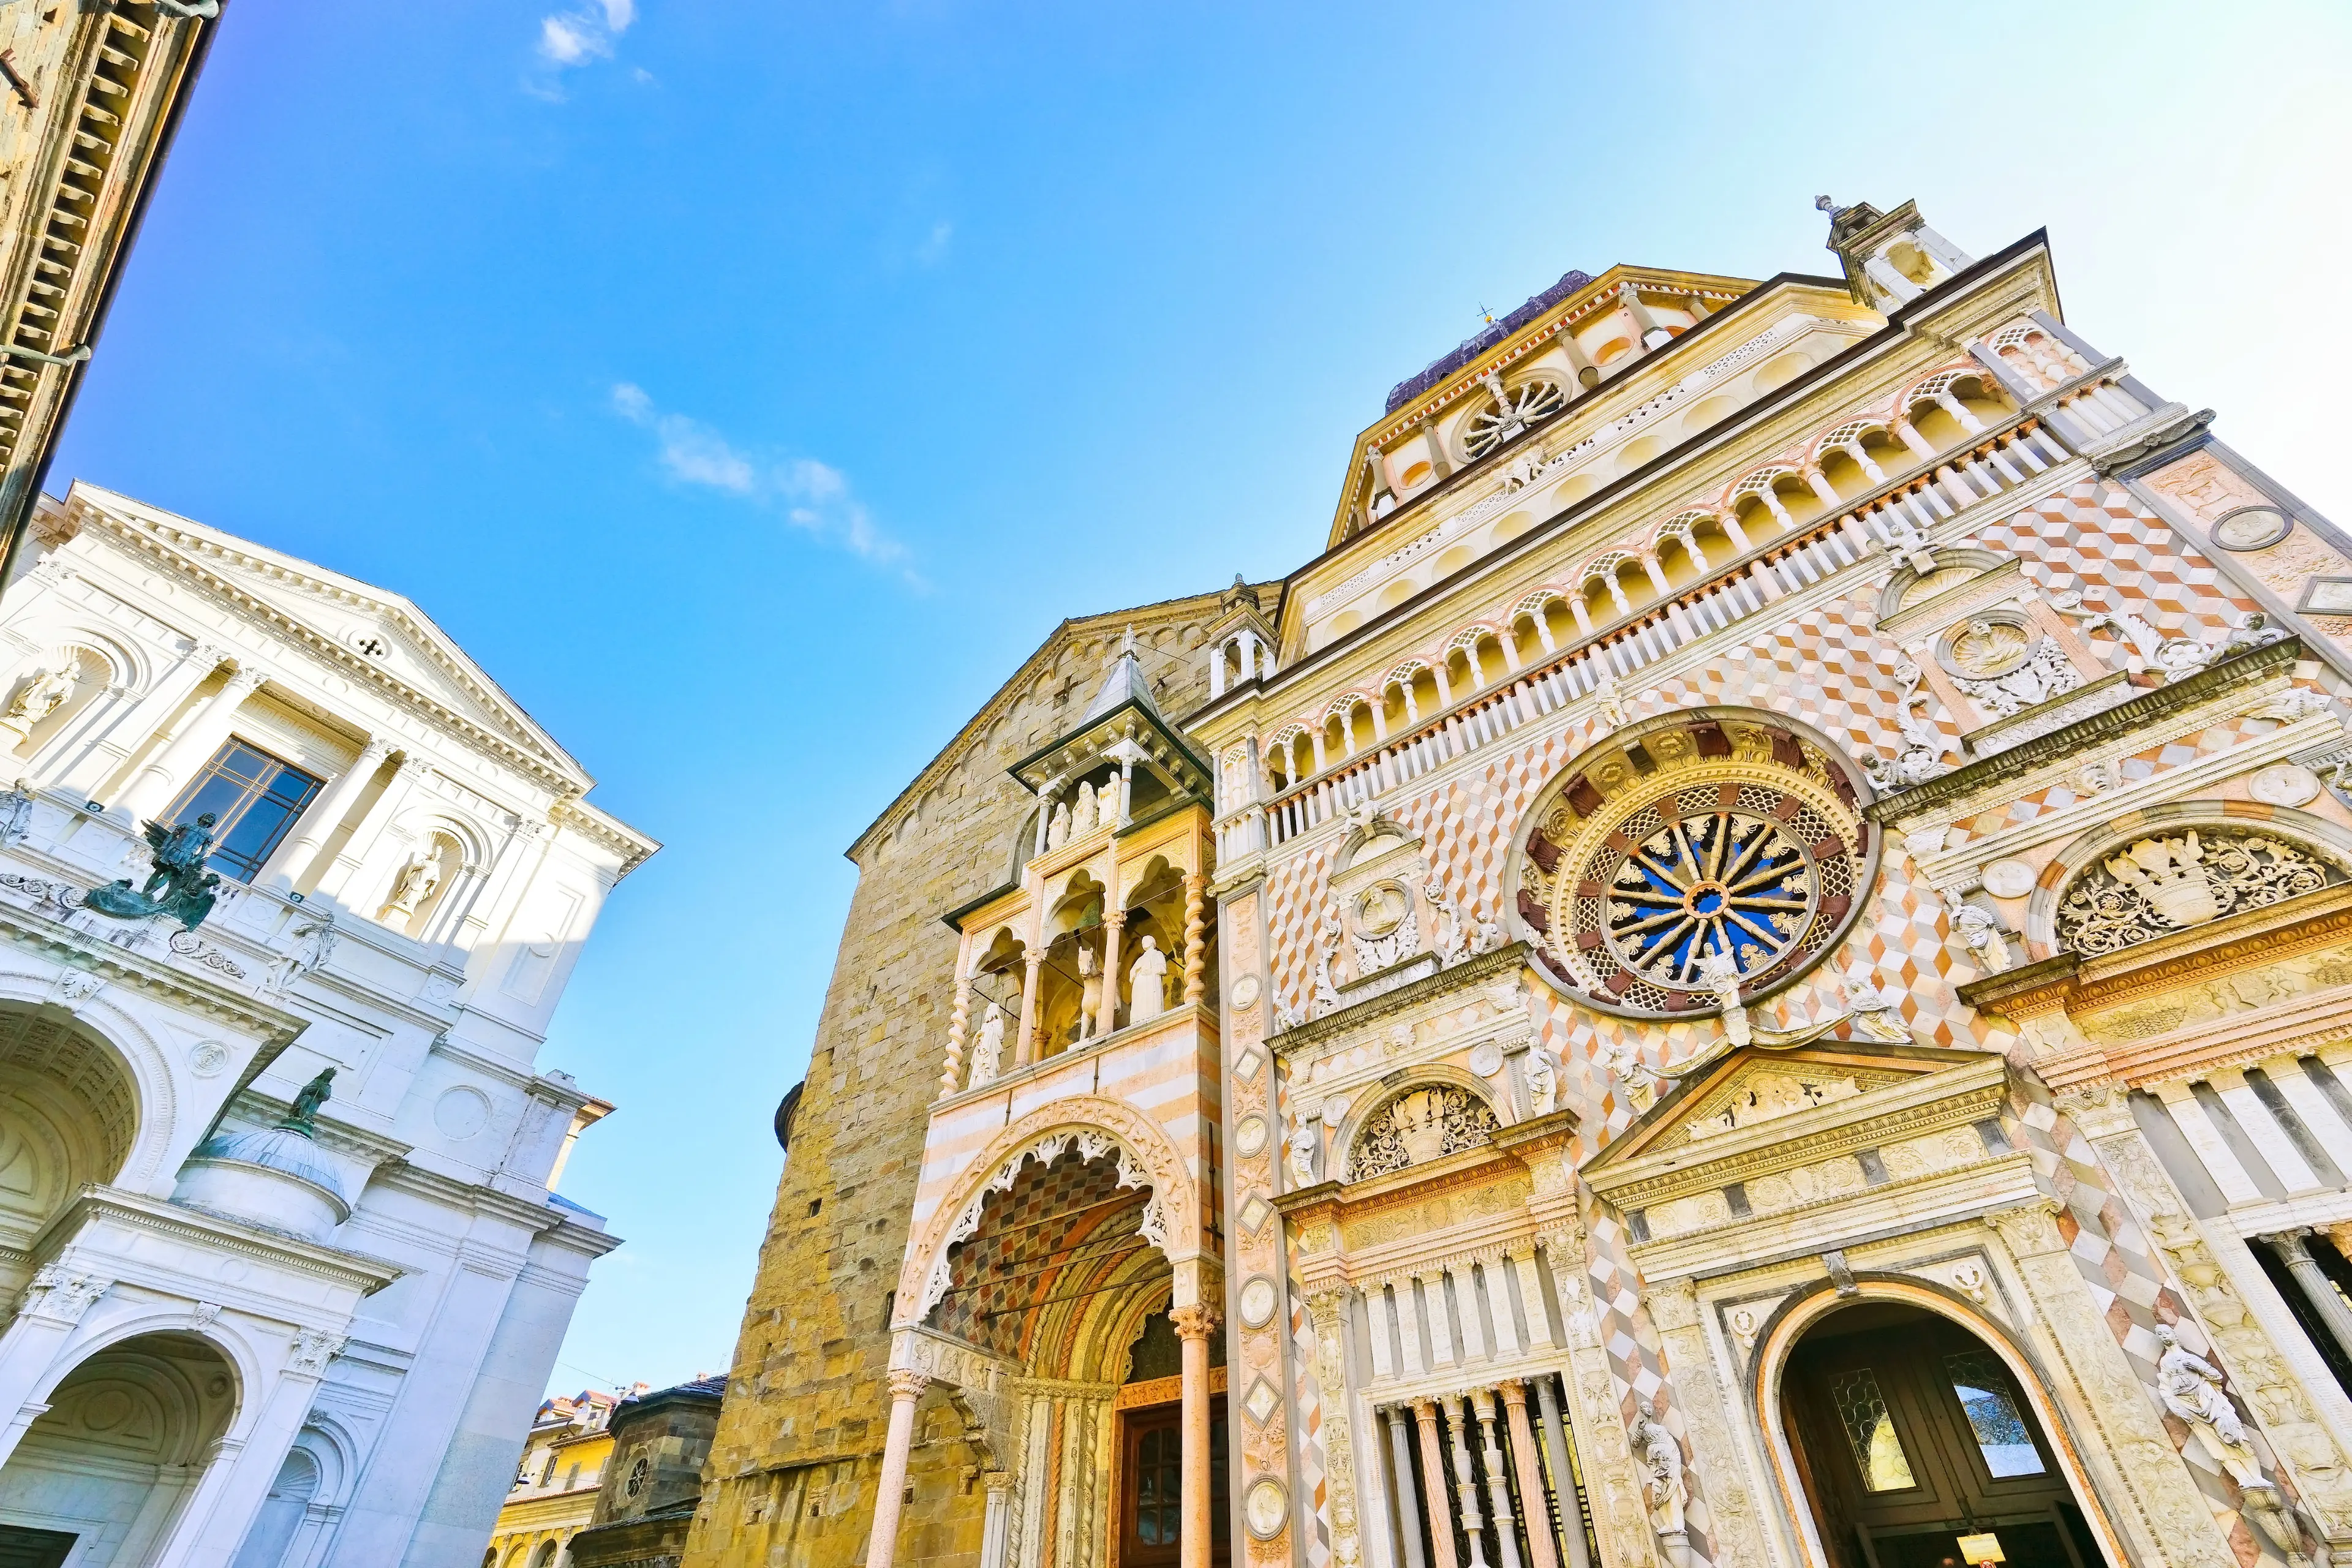 Bergamo Cathedral and church of Santa Maria Maggiore at the Upper City